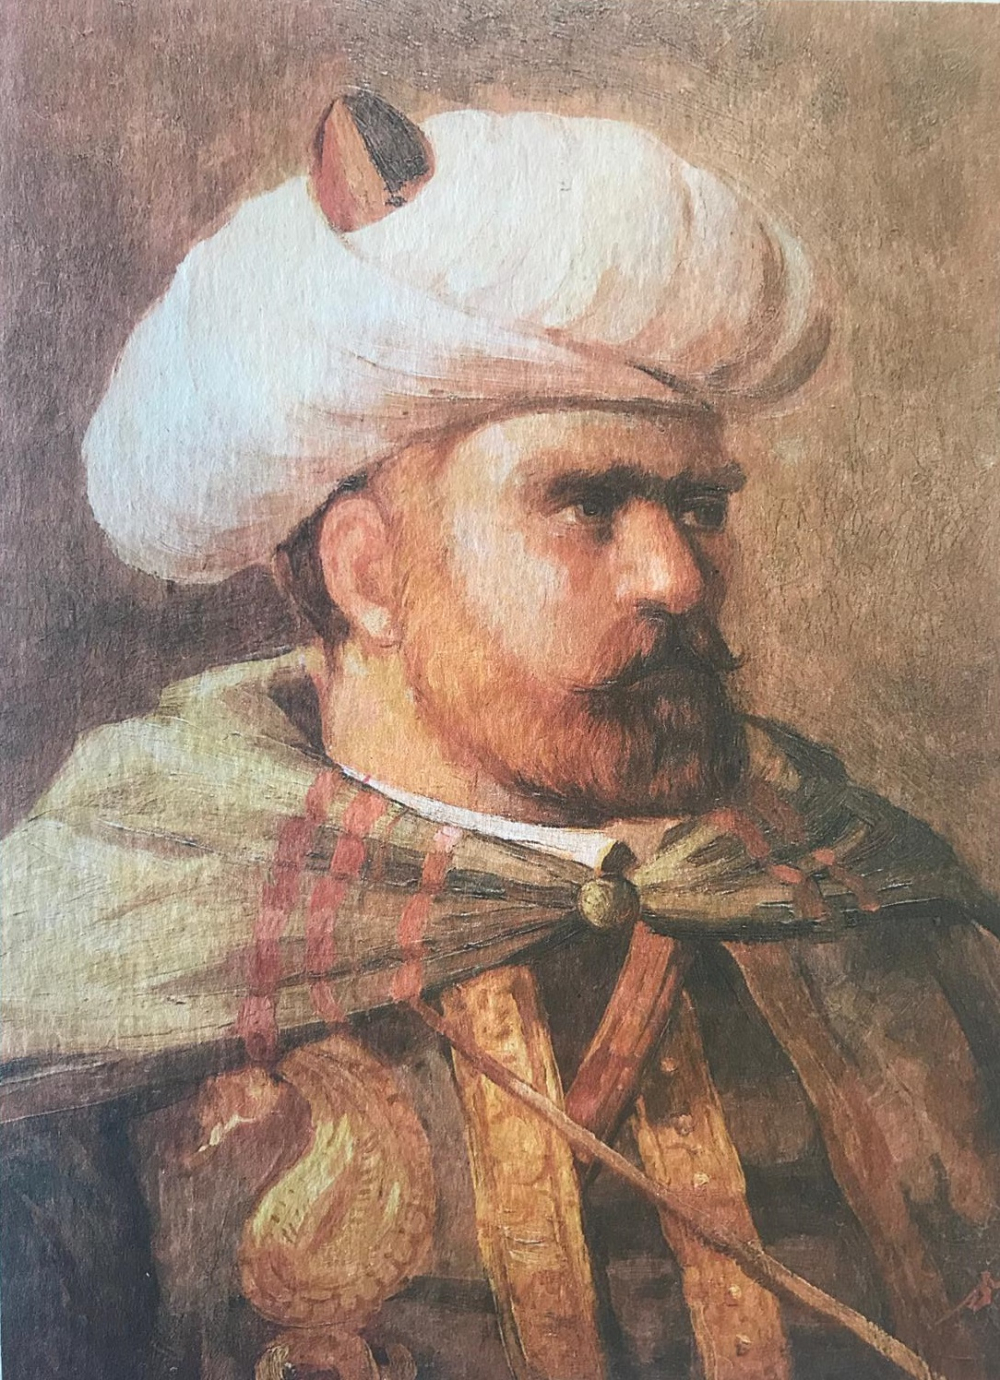 Sektörel Tarih: Barbaros Hayrettin Paşa’nın, Osmanlı’nın Akdeniz Egemenliği Üzerindeki Rolü ve Hayatı